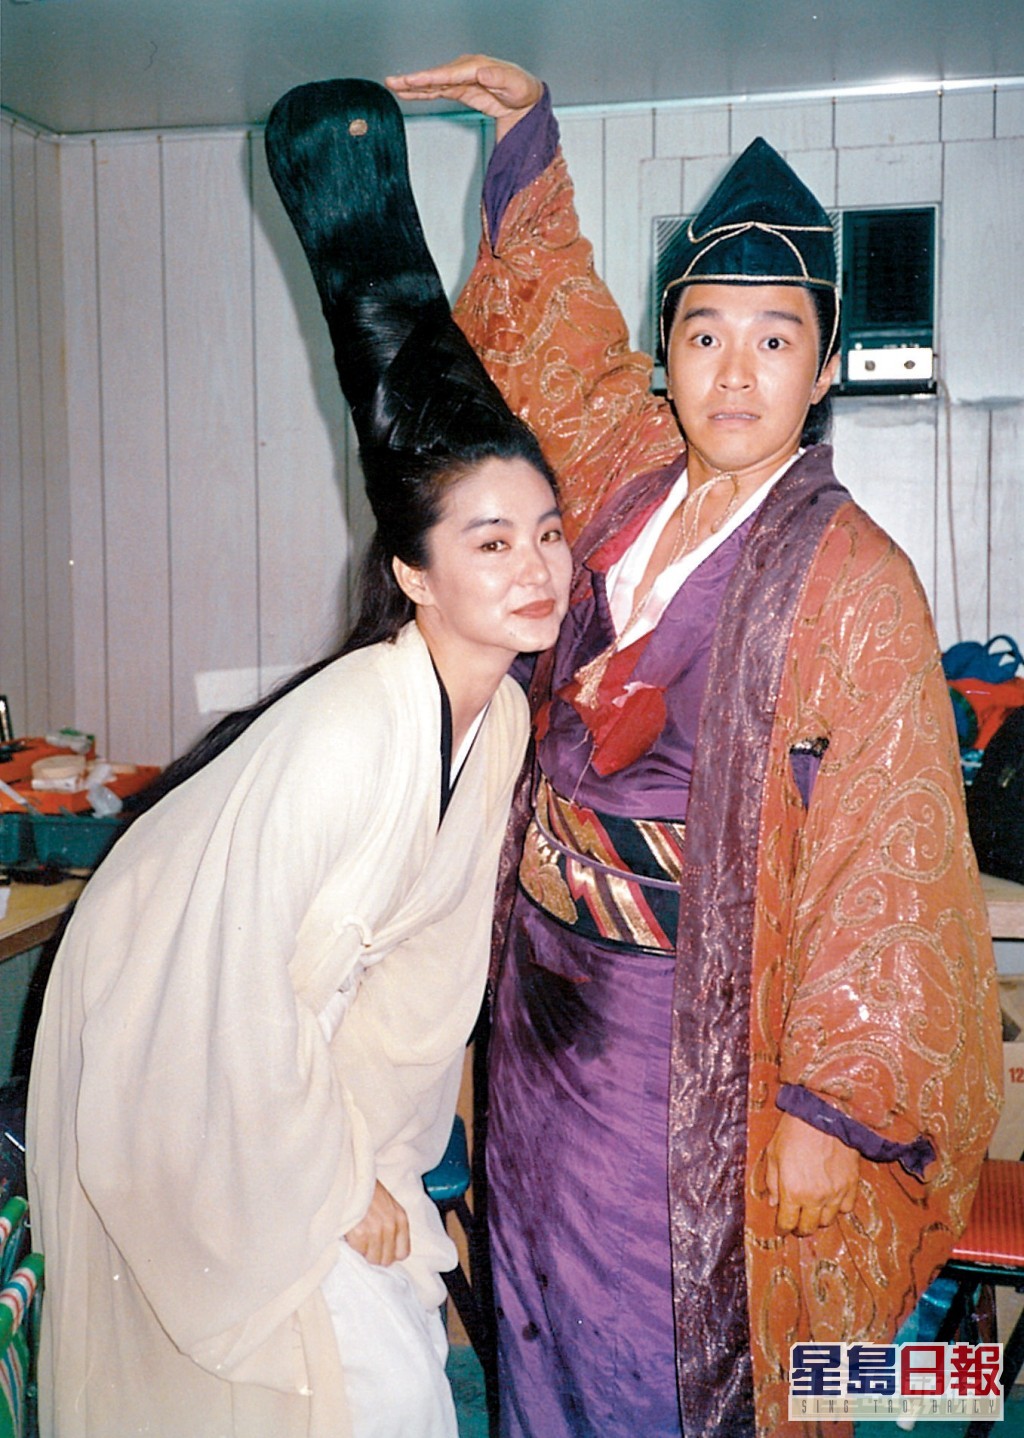 林青霞曾与多位影星合作，包括周星驰、张曼玉、同样是来自台湾的王祖贤等等。